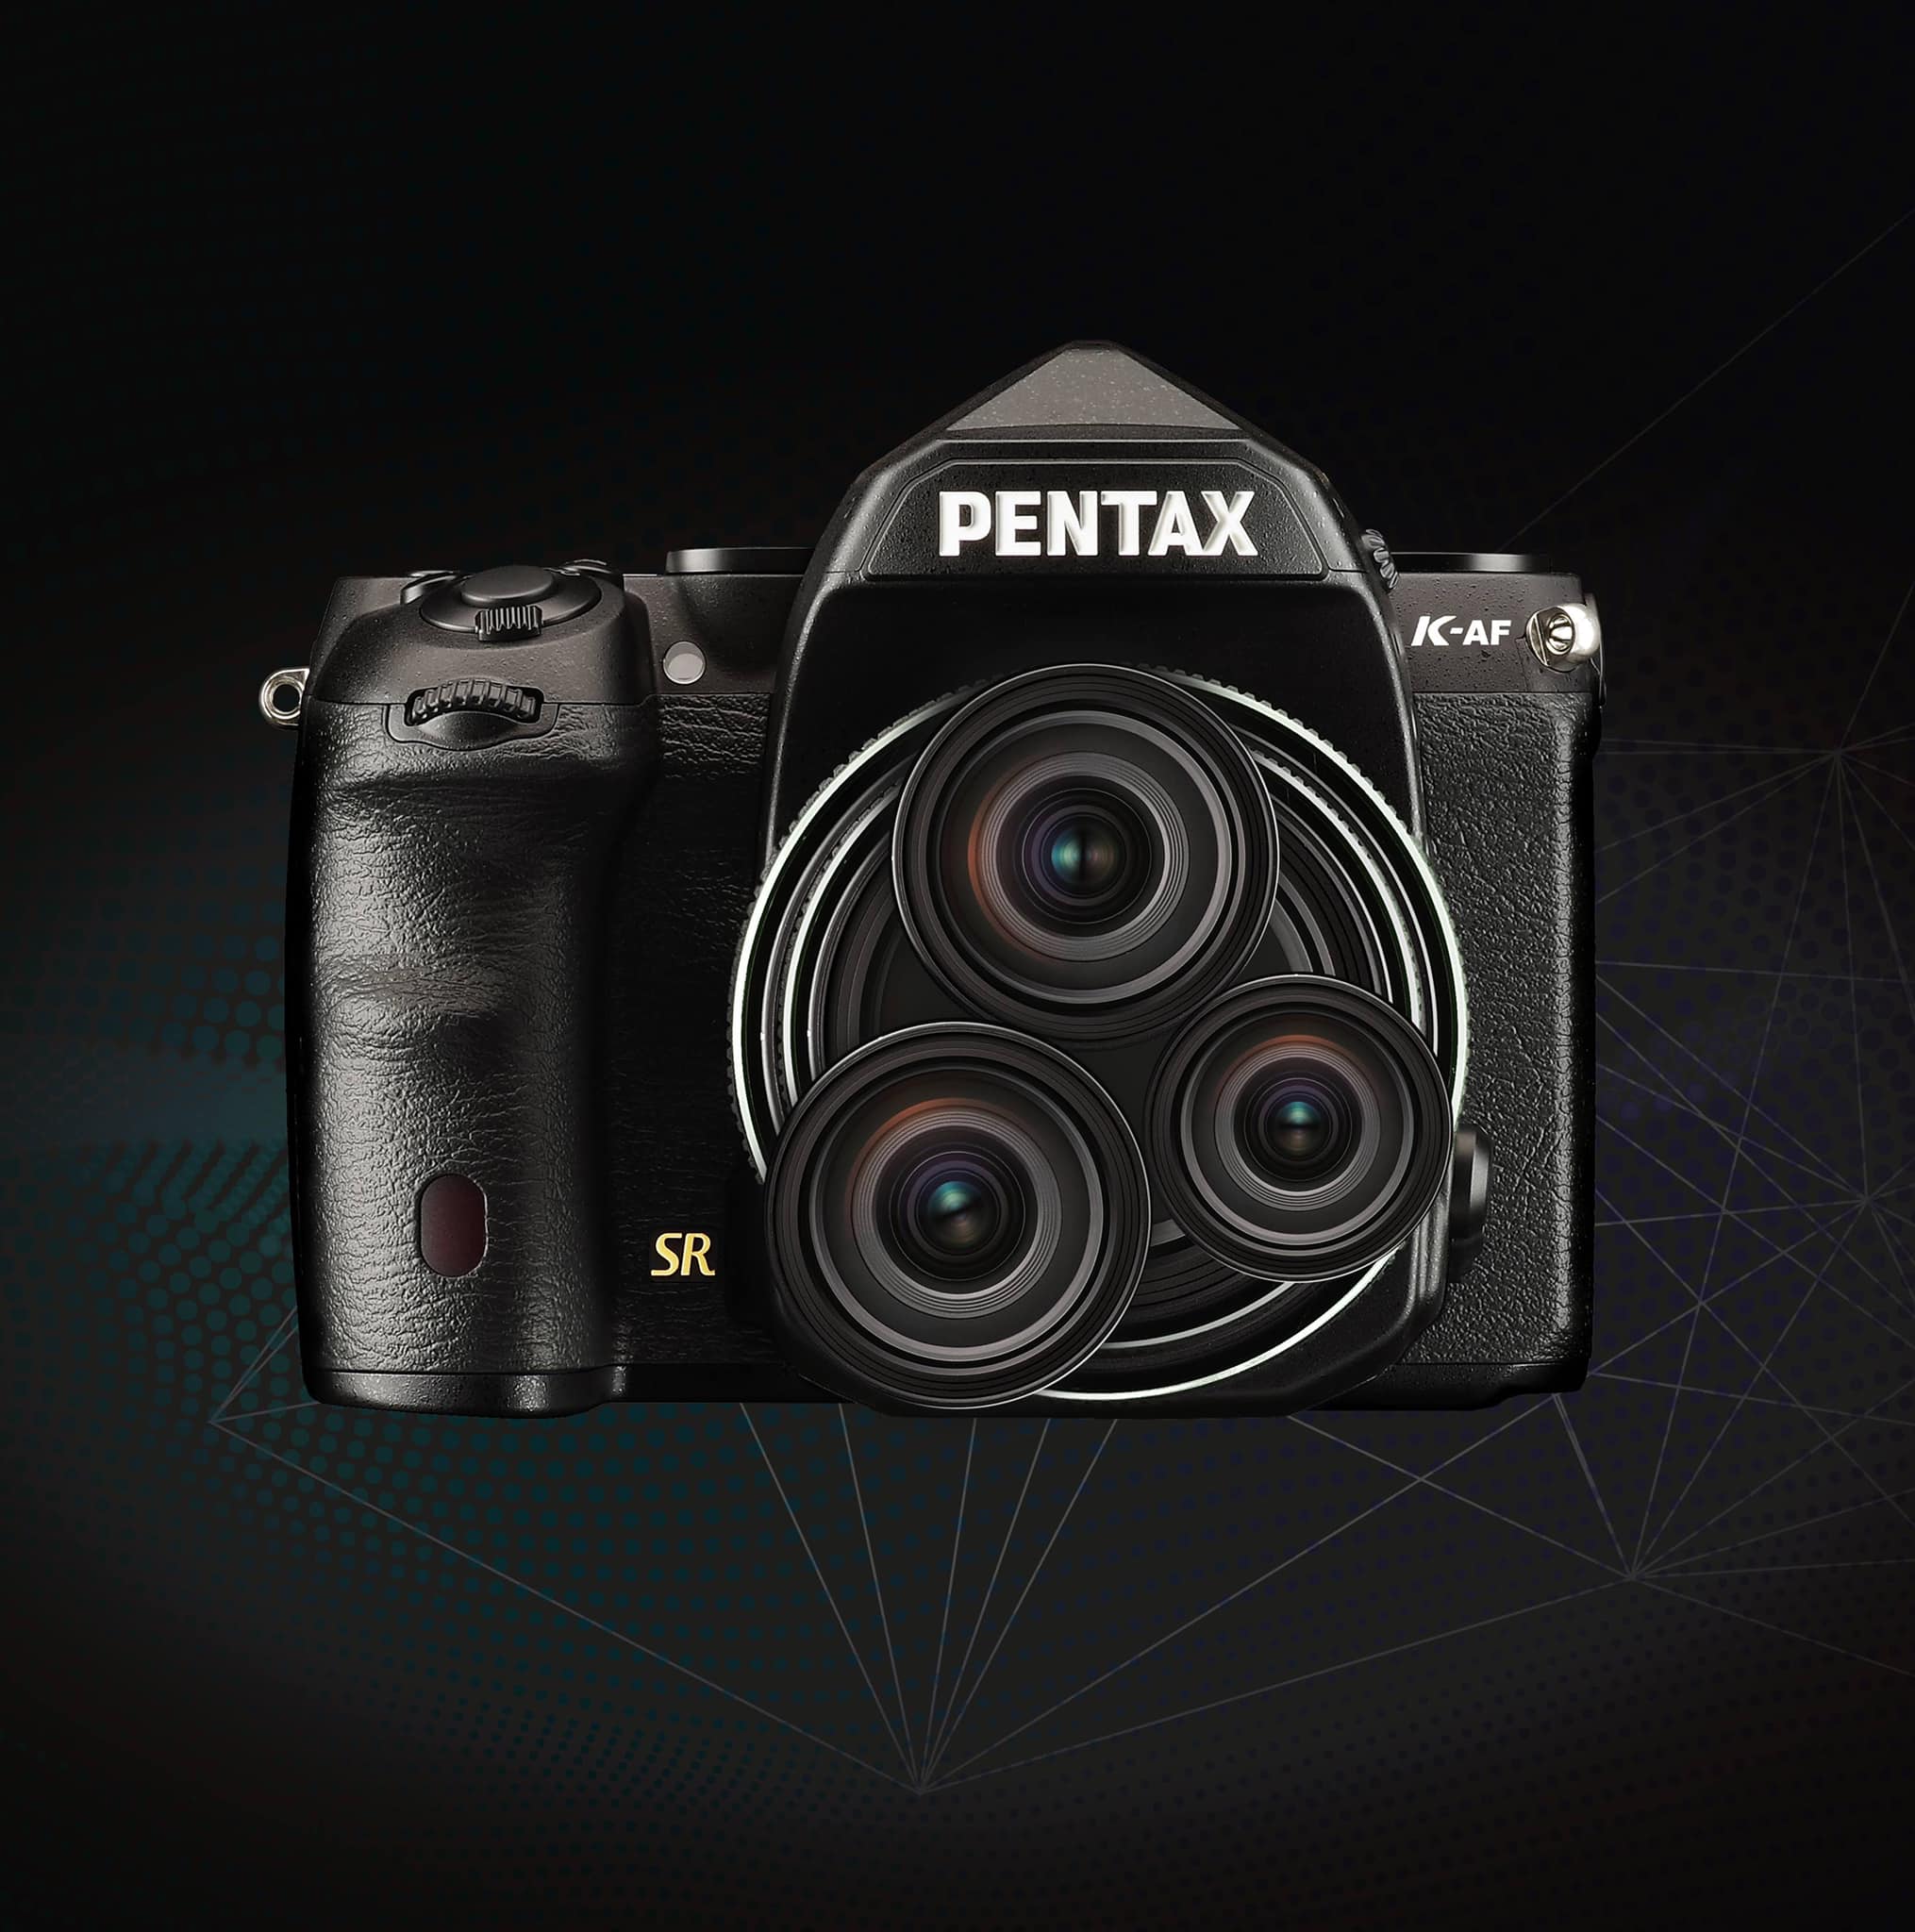 ล้ำมาก Ricoh เปิดตัว Pentax K-AF กล้อง DSLR ระดับ Flagship รุ่นใหม่ มาพร้อมเลนส์ซูมในตัว 3 เลนส์